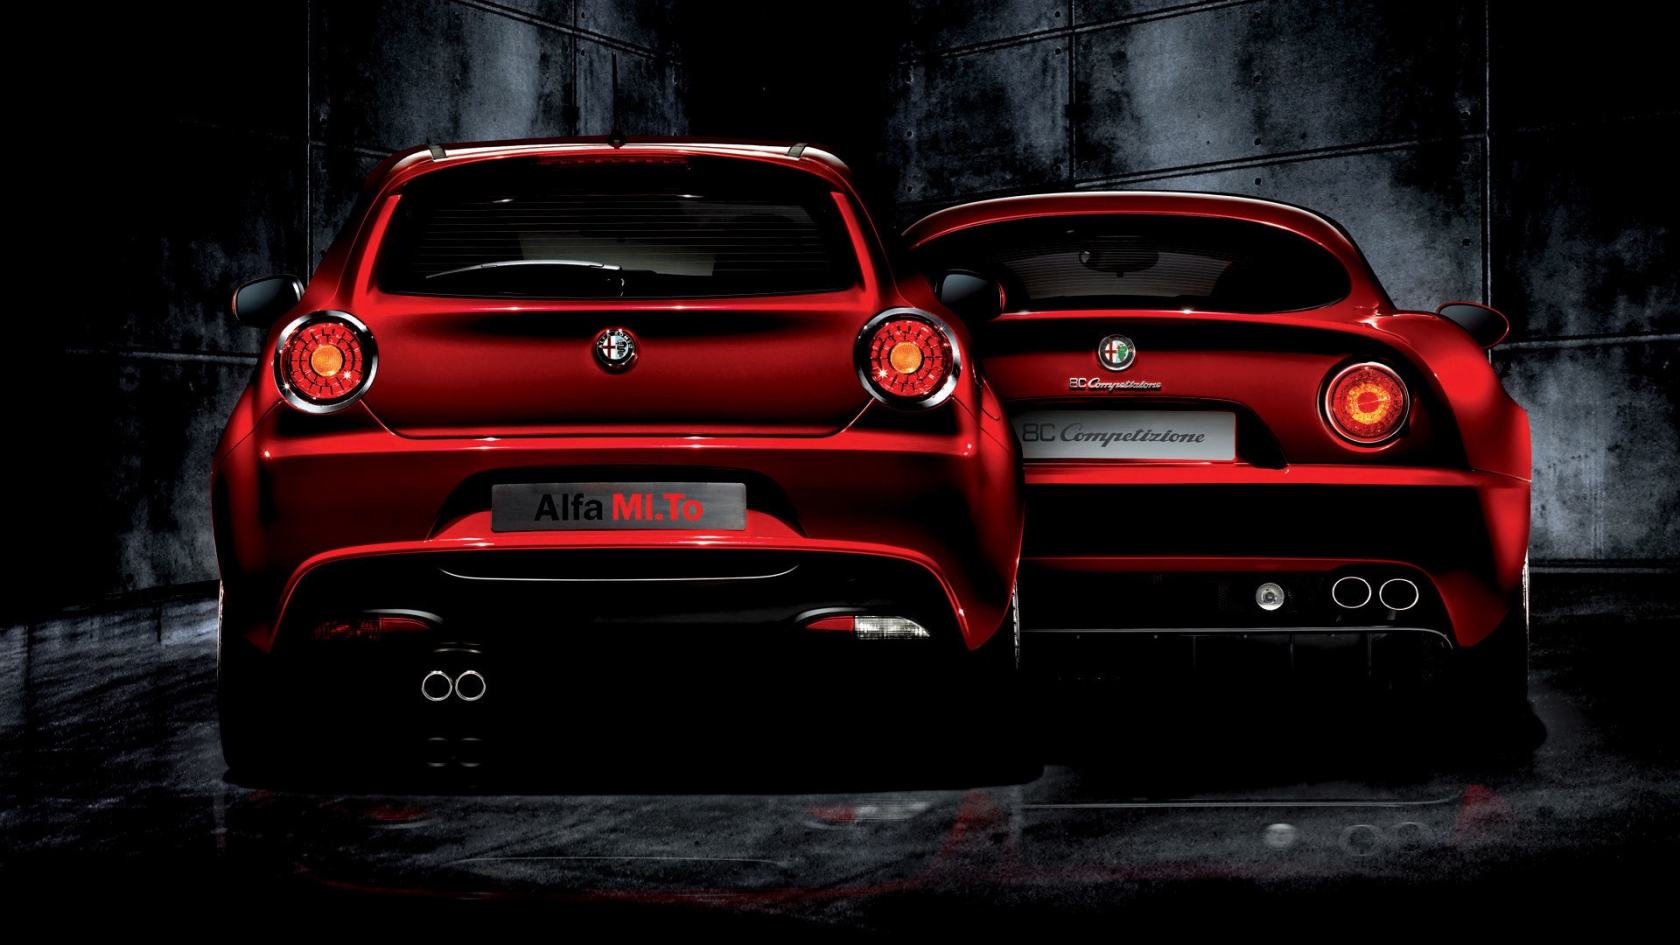 Alfa Romeo Mi To and 8C Competizione for 1680 x 945 HDTV resolution